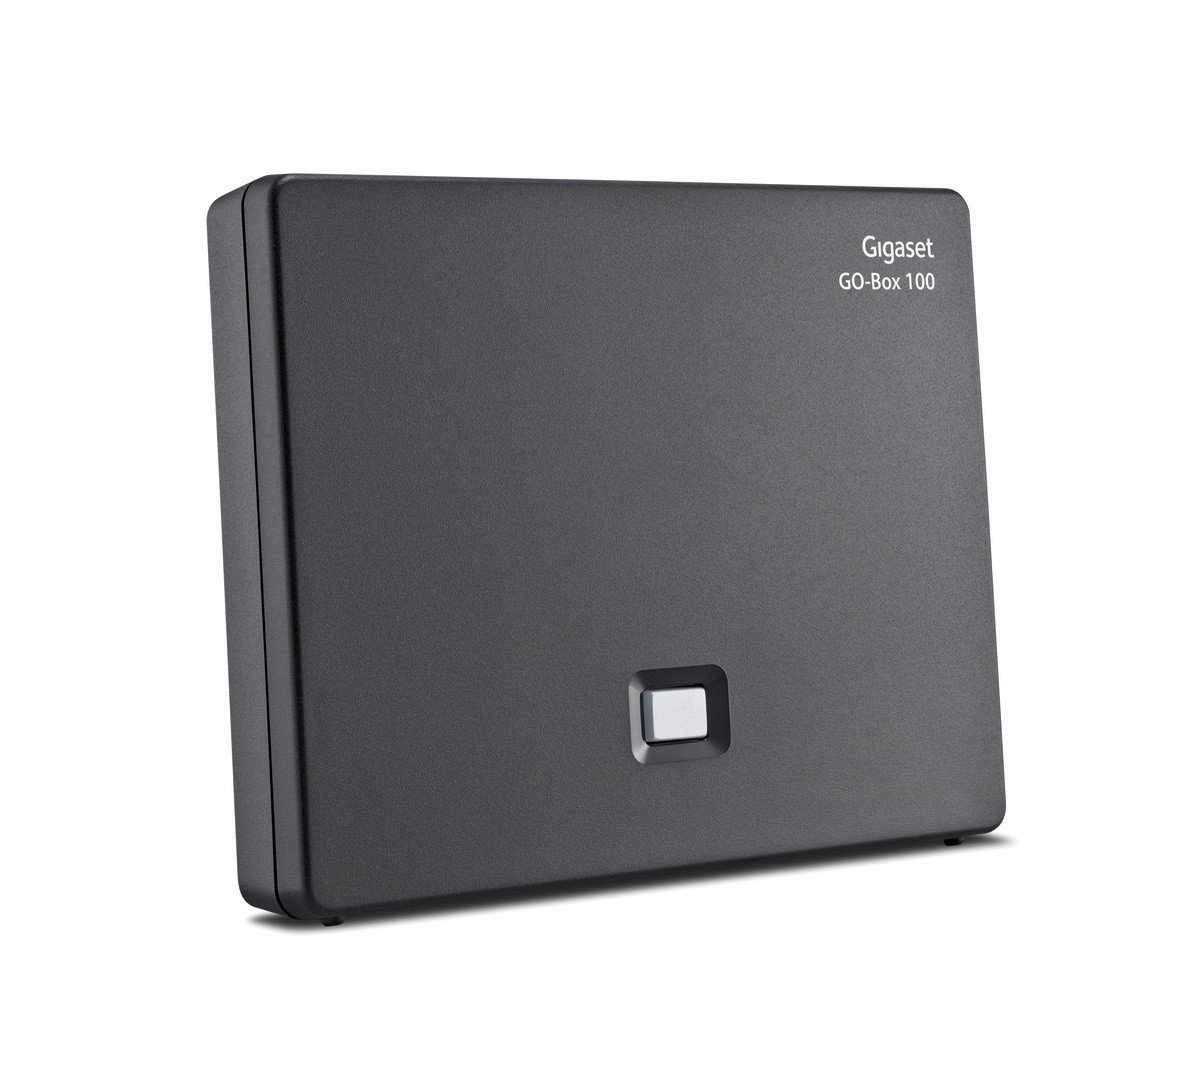 Verbindung analog über TAE-Anschluss oder per LAN-Kabel an Ihrem Router kompatibel mit 6 Gigaset Mobilteilen Gigaset C575 schwarz & DECT Basisstation GO Box 100 in schwarz Schnurloses Telefon 